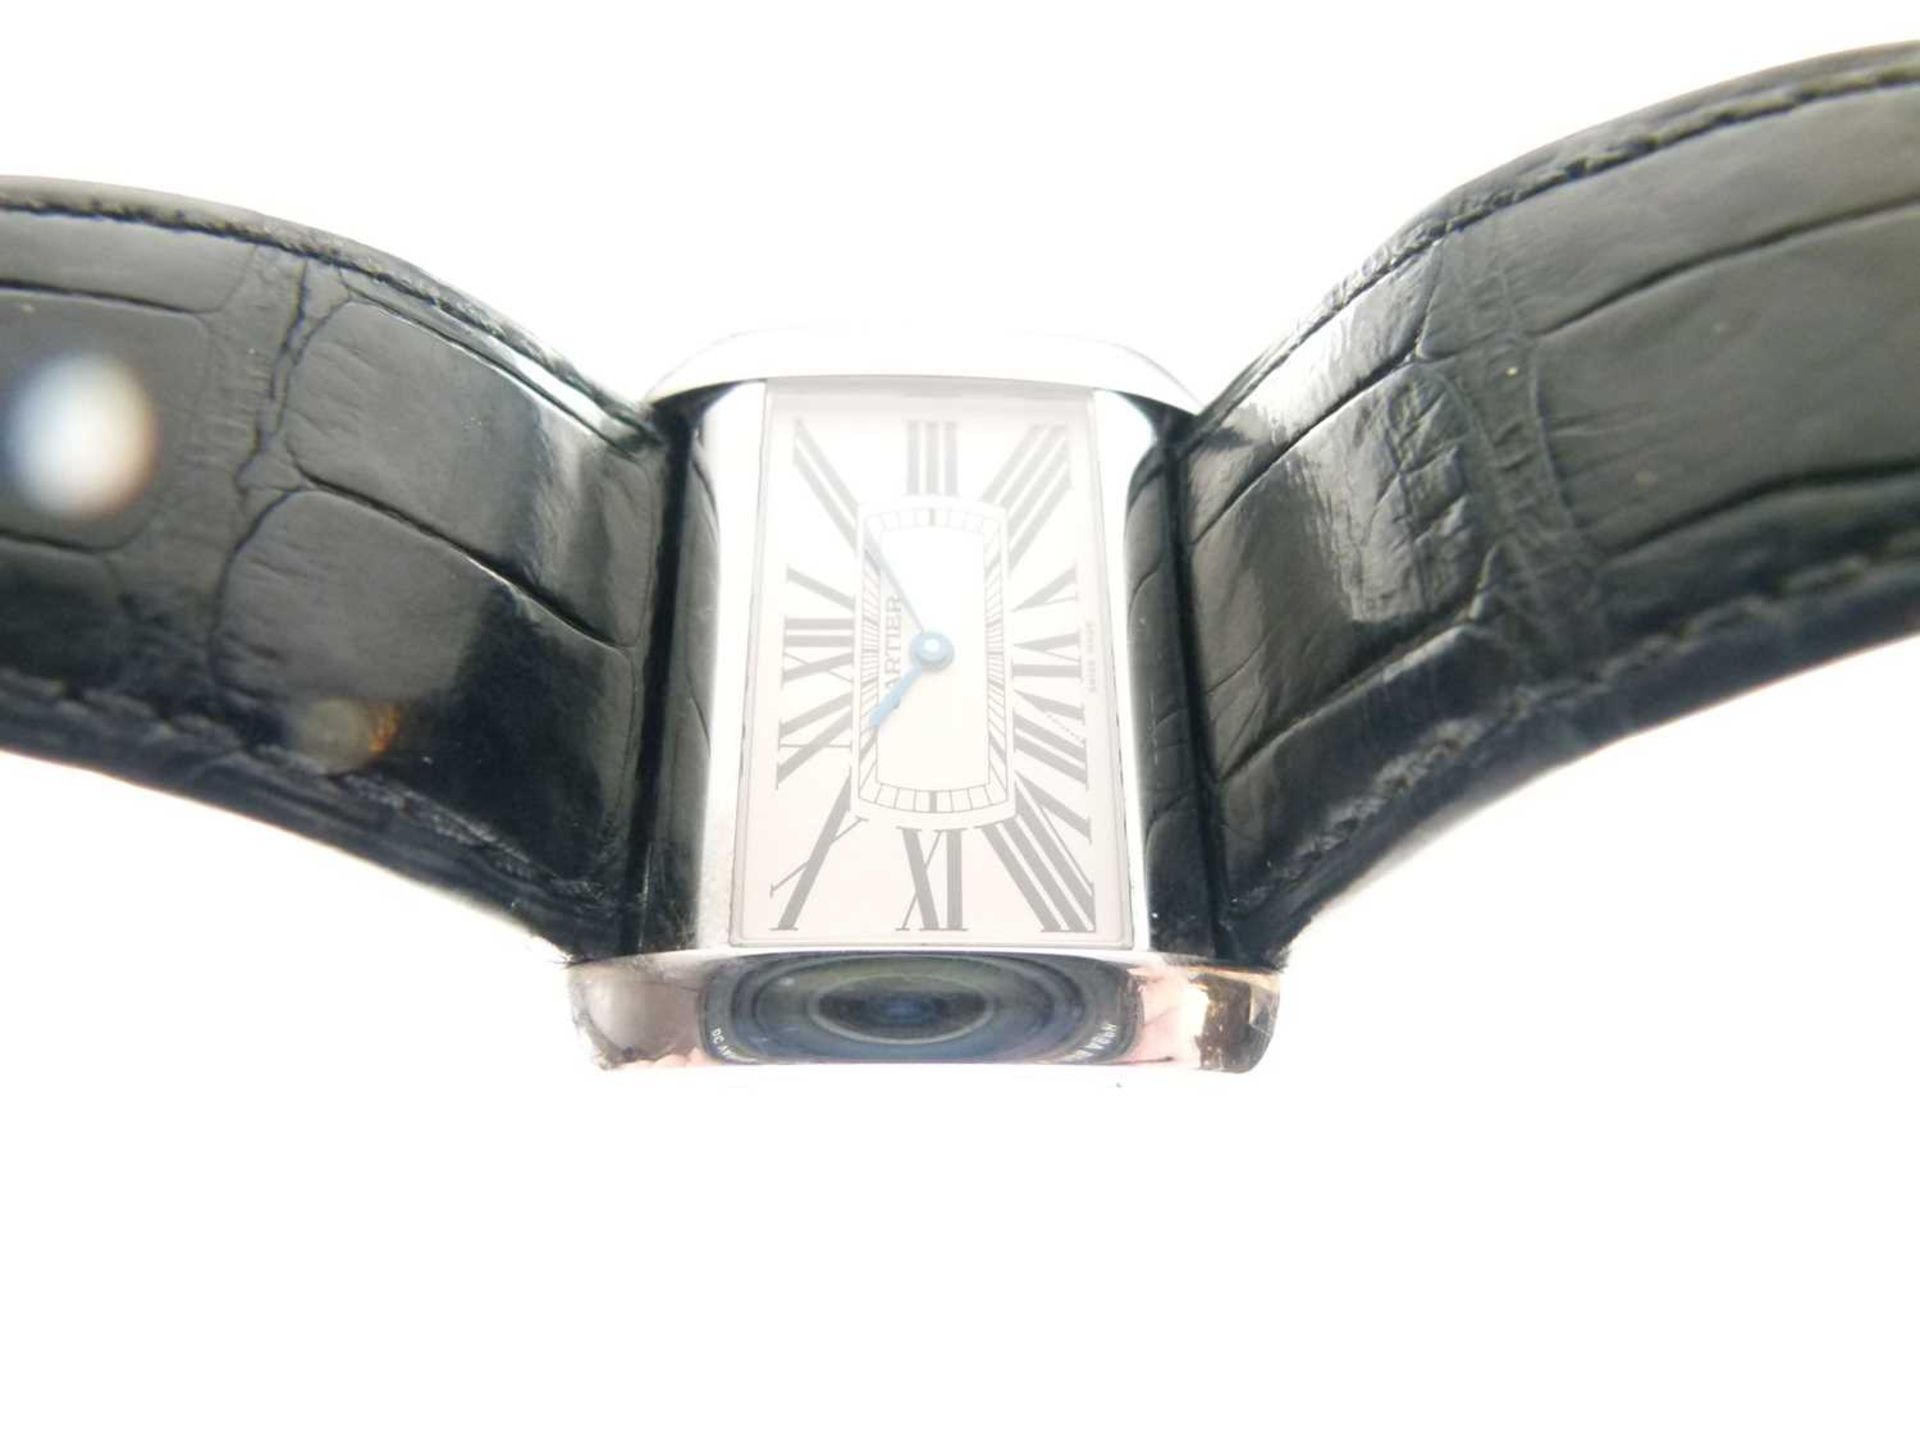 Cartier - Gentleman's Tank Divan stainless steel cased wristwatch - Image 4 of 8